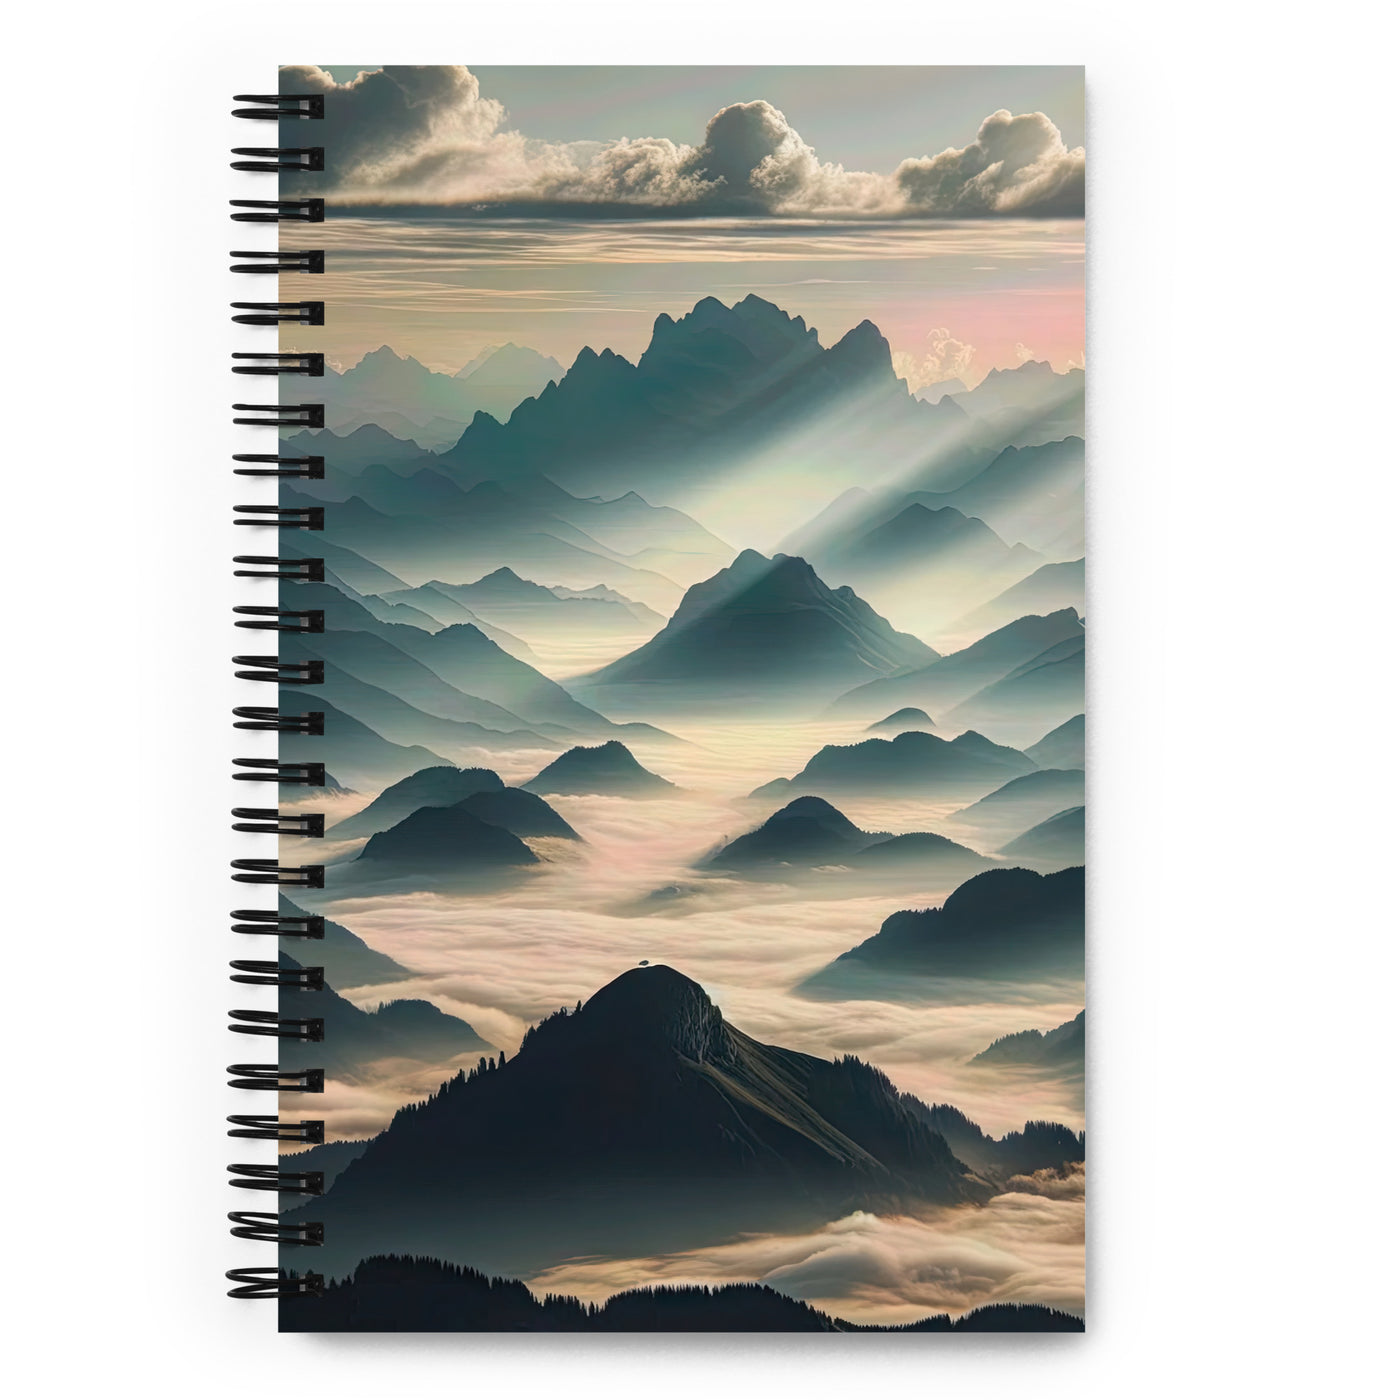 Foto der Alpen im Morgennebel, majestätische Gipfel ragen aus dem Nebel - Notizbuch berge xxx yyy zzz Default Title